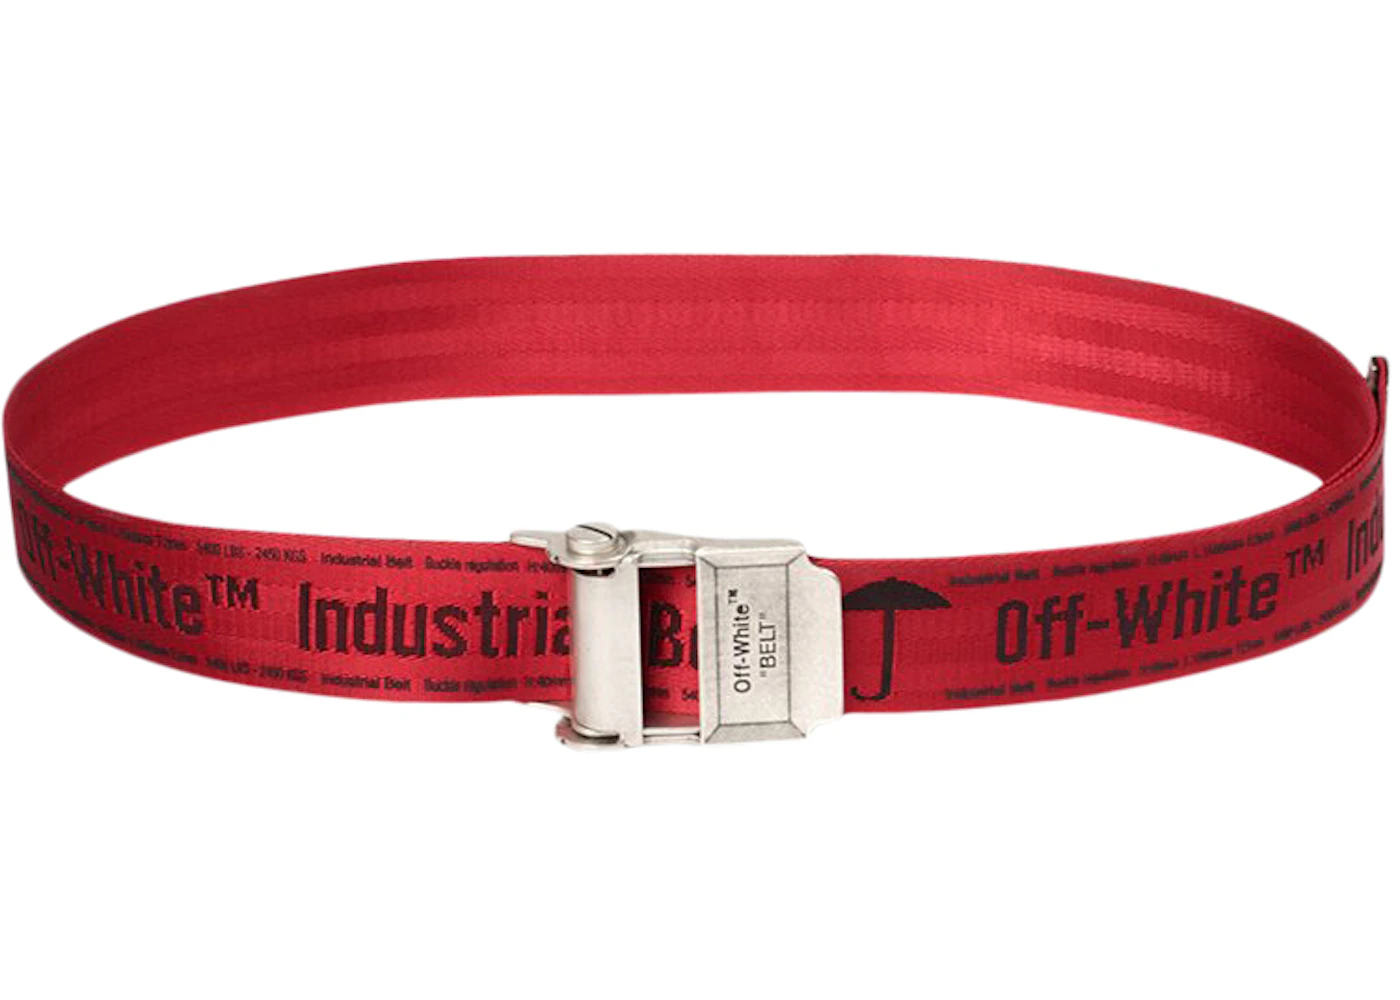 OFF-WHITE Short 2.0 Industrial Belt Red/Black/No Color